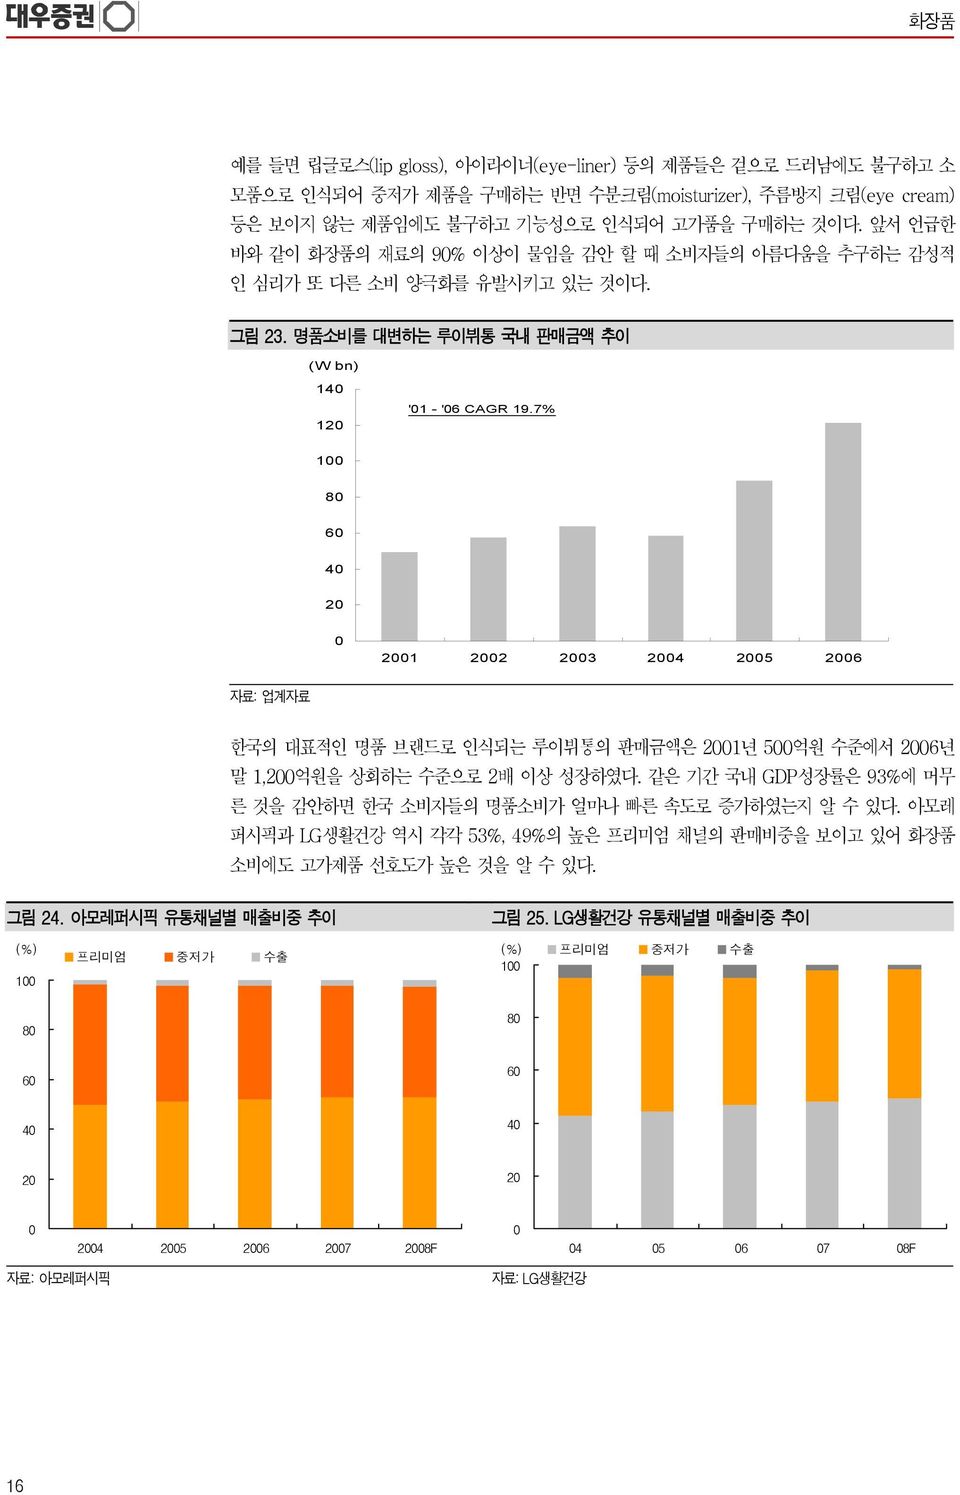 7% 1 8 6 4 2 21 22 23 24 25 26 자료: 업계자료 한국의 대표적인 명품 브랜드로 인식되는 루이뷔통의 판매금액은 21년 5억원 수준에서 26년 말 1,2억원을 상회하는 수준으로 2배 이상 성장하였다.